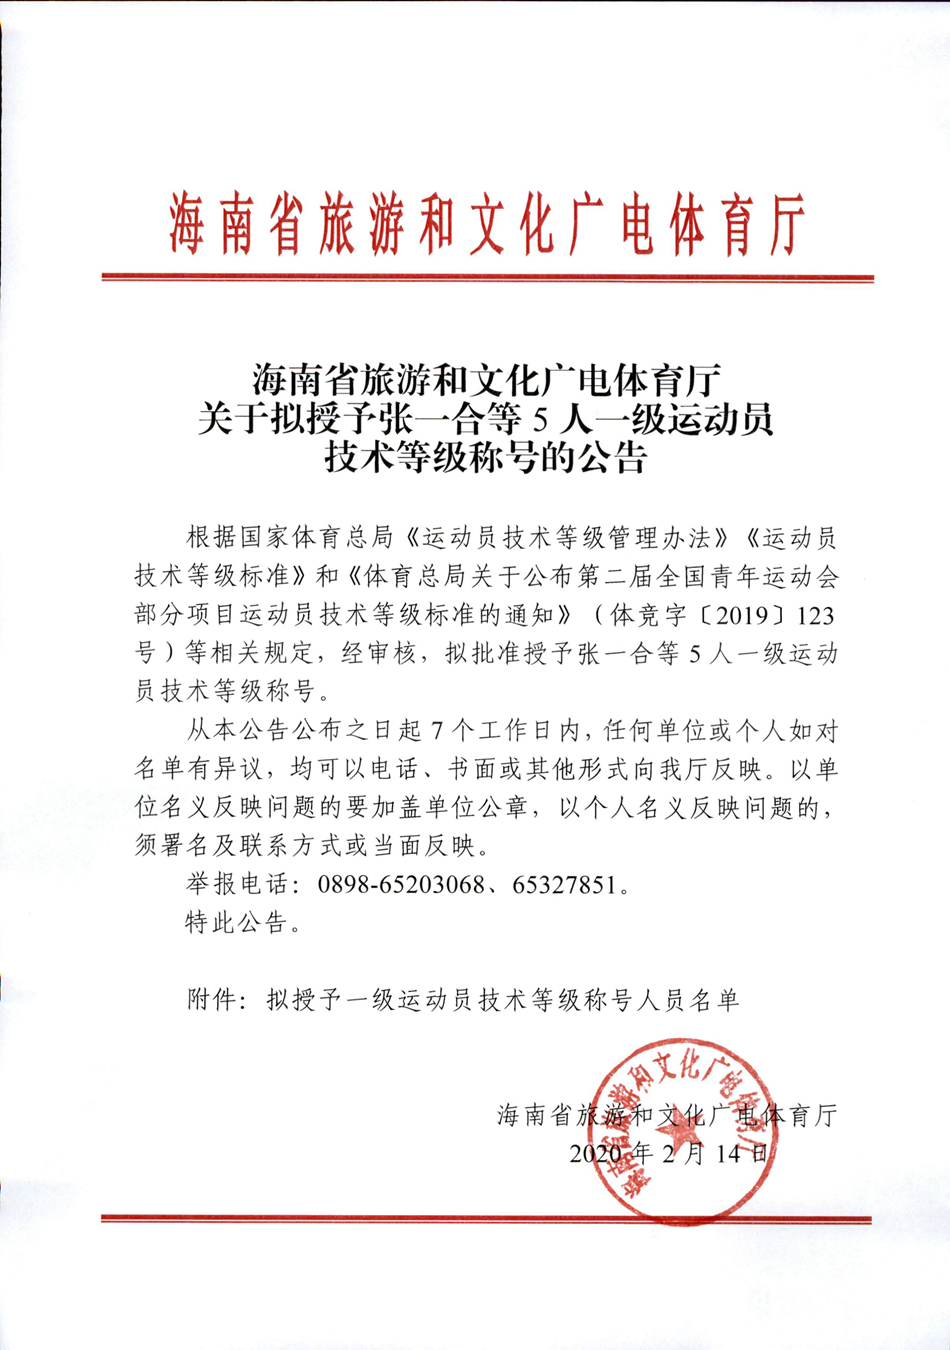 海南省旅游和文化广电体育厅关于授予张一合等5人一级运动员技术等级称号的公告.jpg